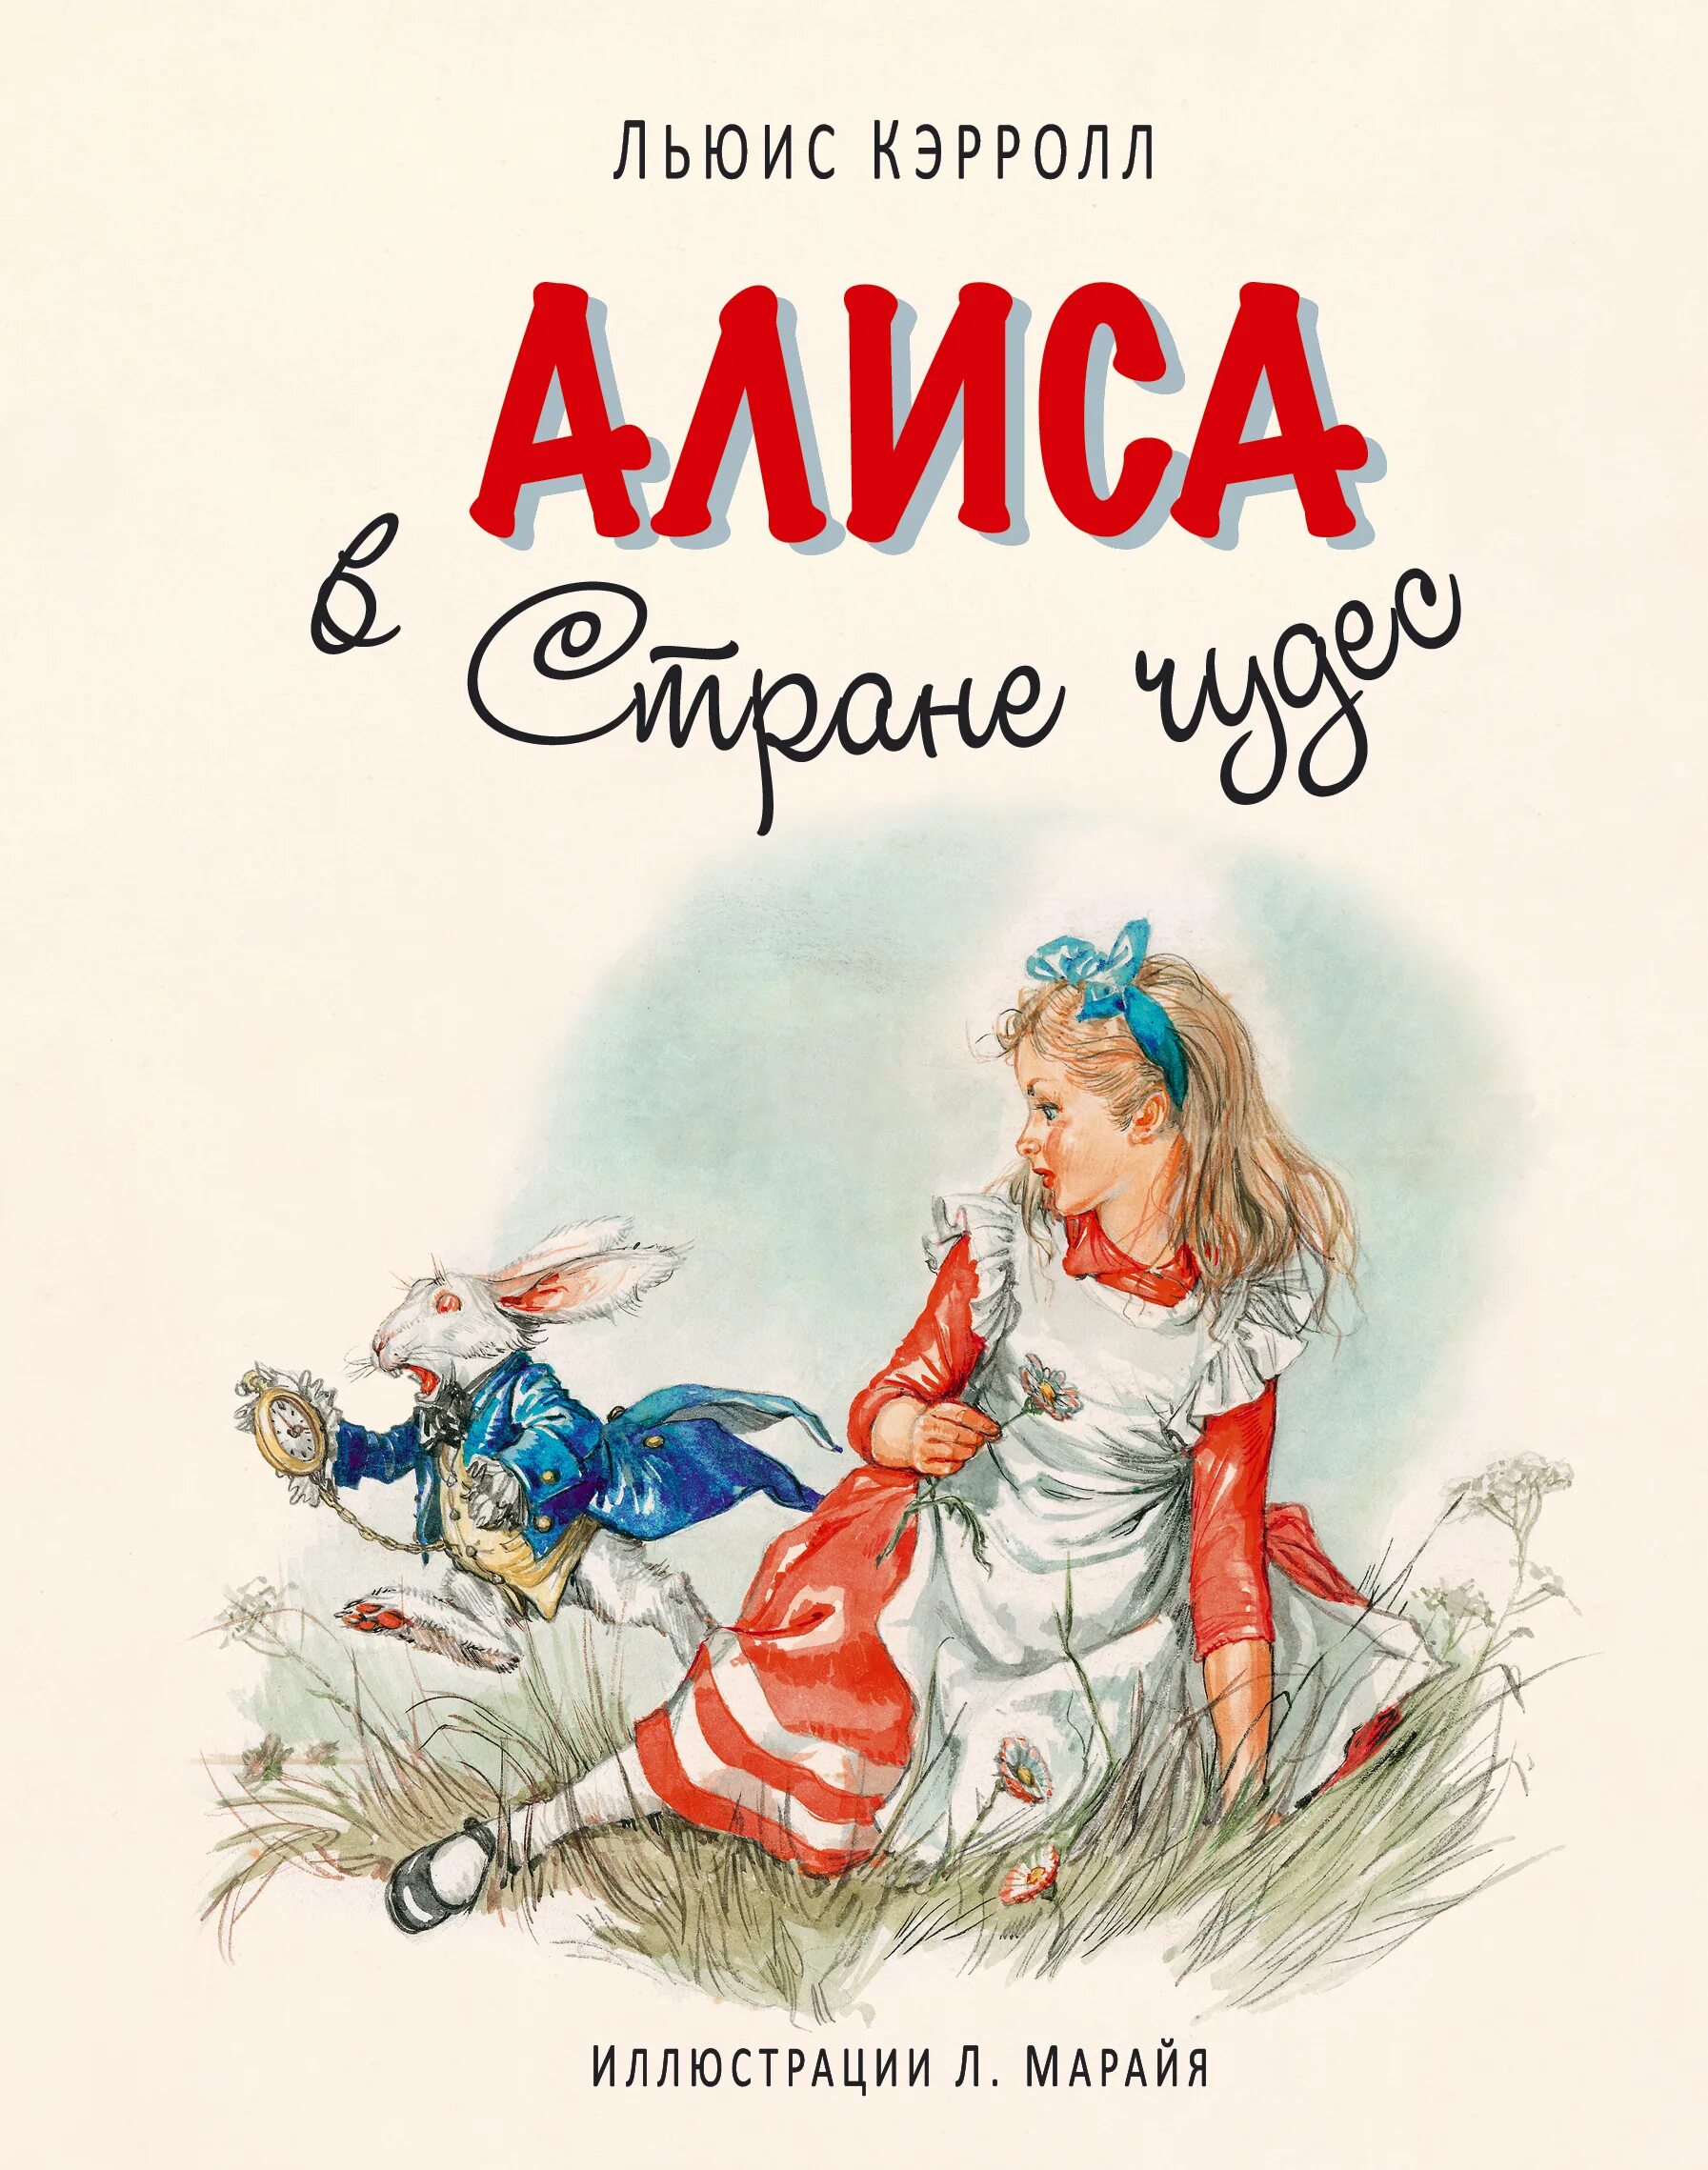 Урок в 5 классе л кэрролл. Льюис Керрол: «Алиса в стране чудес». Л Кэрролл Алиса в стране чудес обложка книги. Льюис Кэрролл Алиса в стране чудес обложка. Л Кэрролл Алиса в стране чудес иллюстрации.